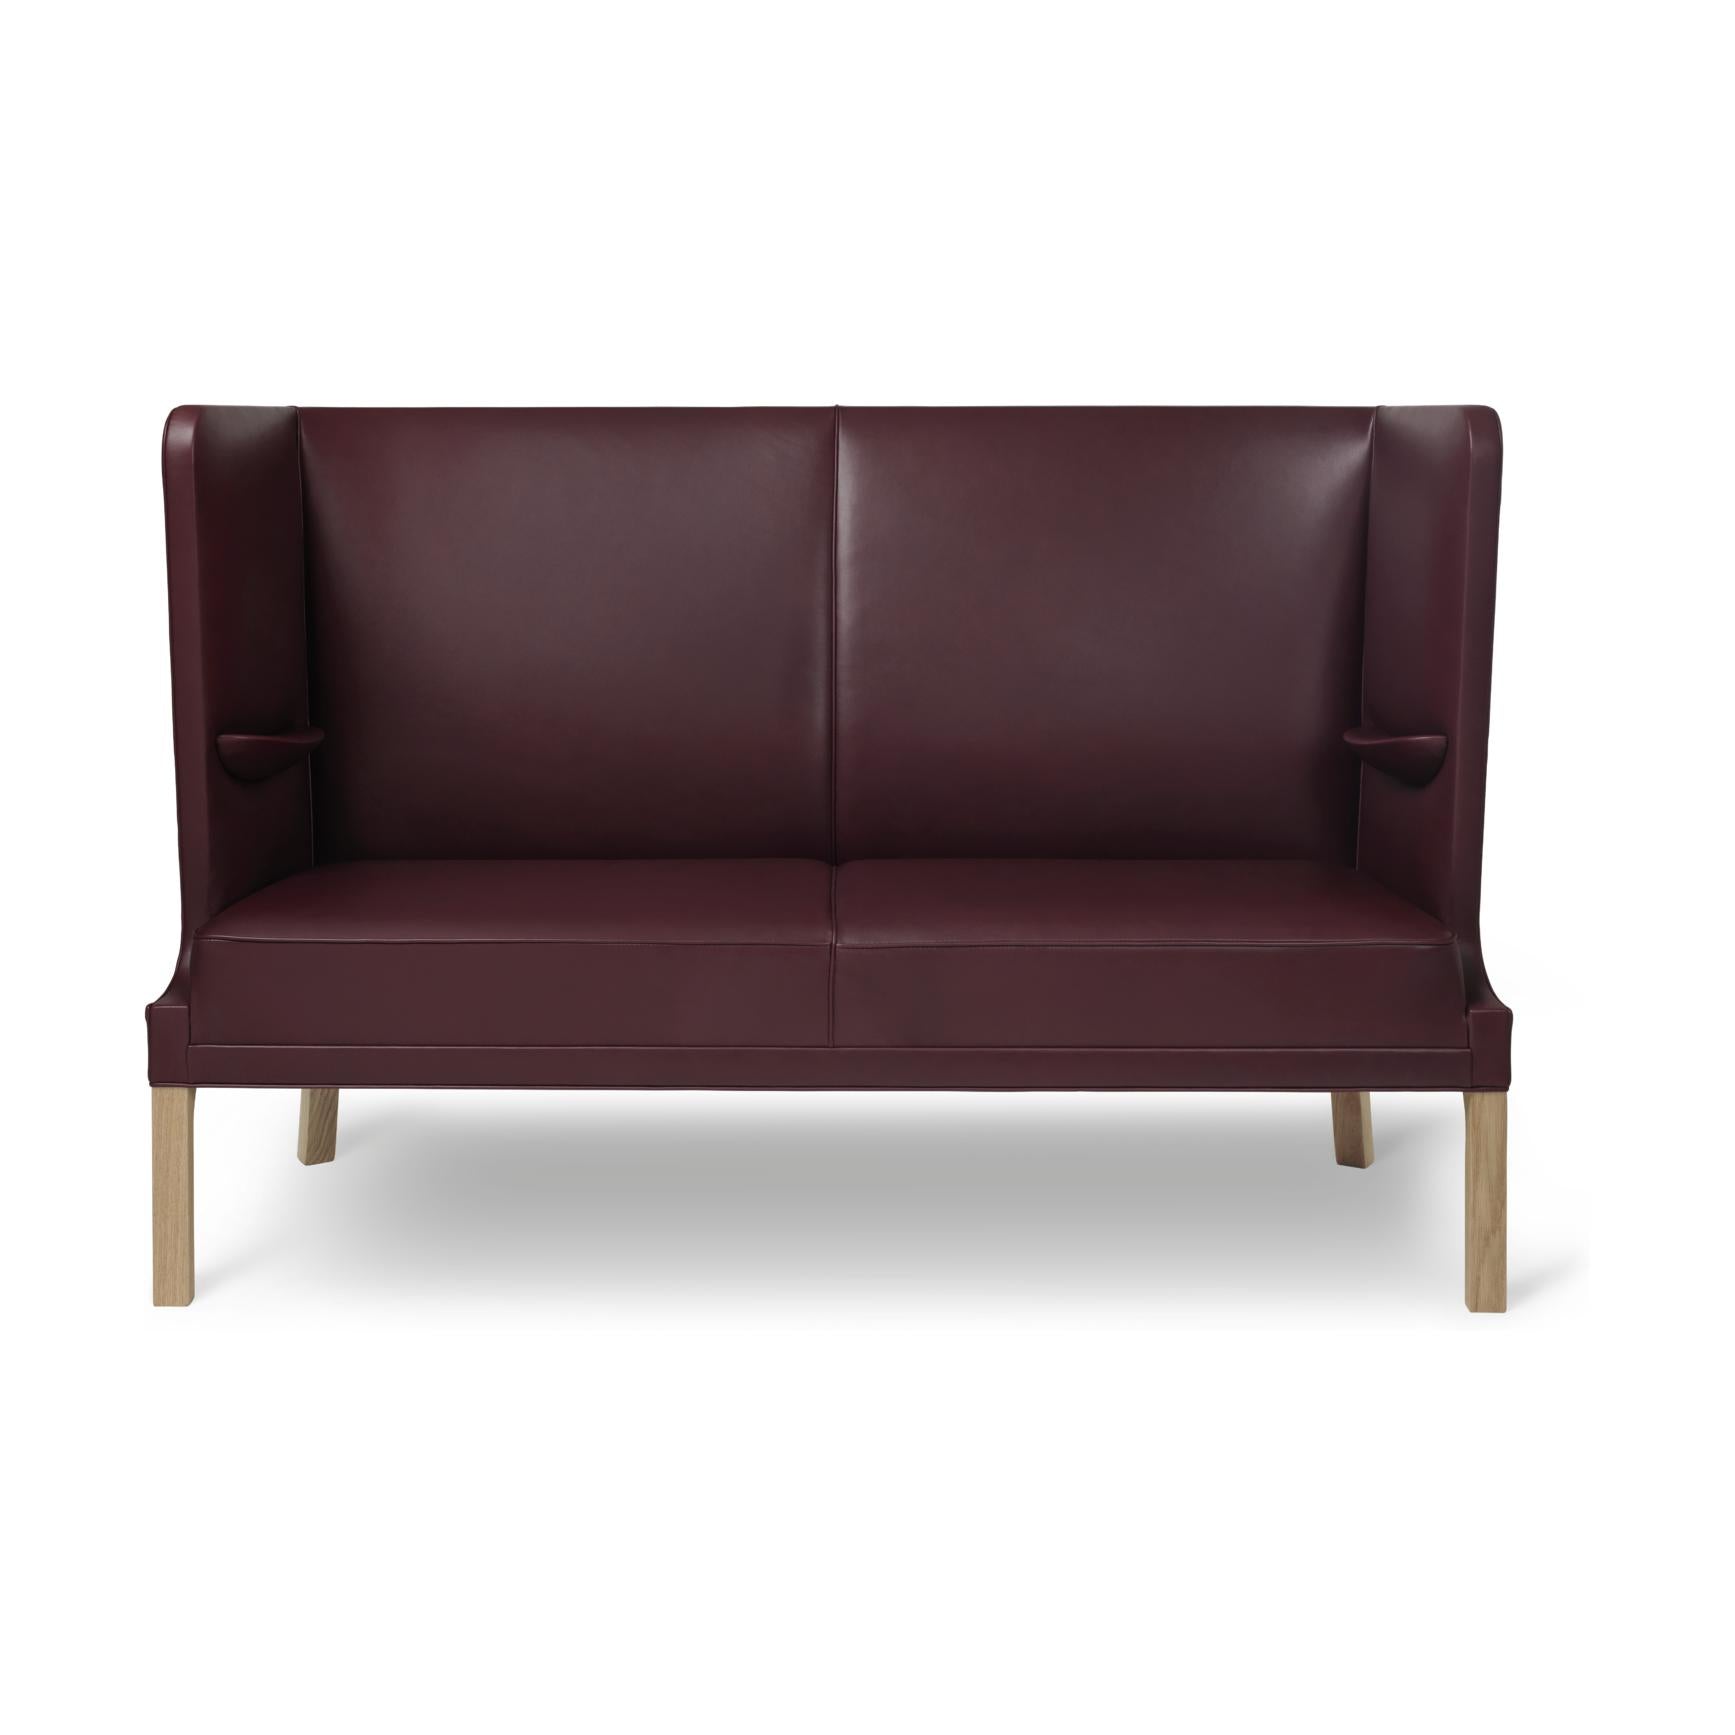 Carl Hansen Fh436 Coupé Sofa, Oiled Oak/Burgundy Leather